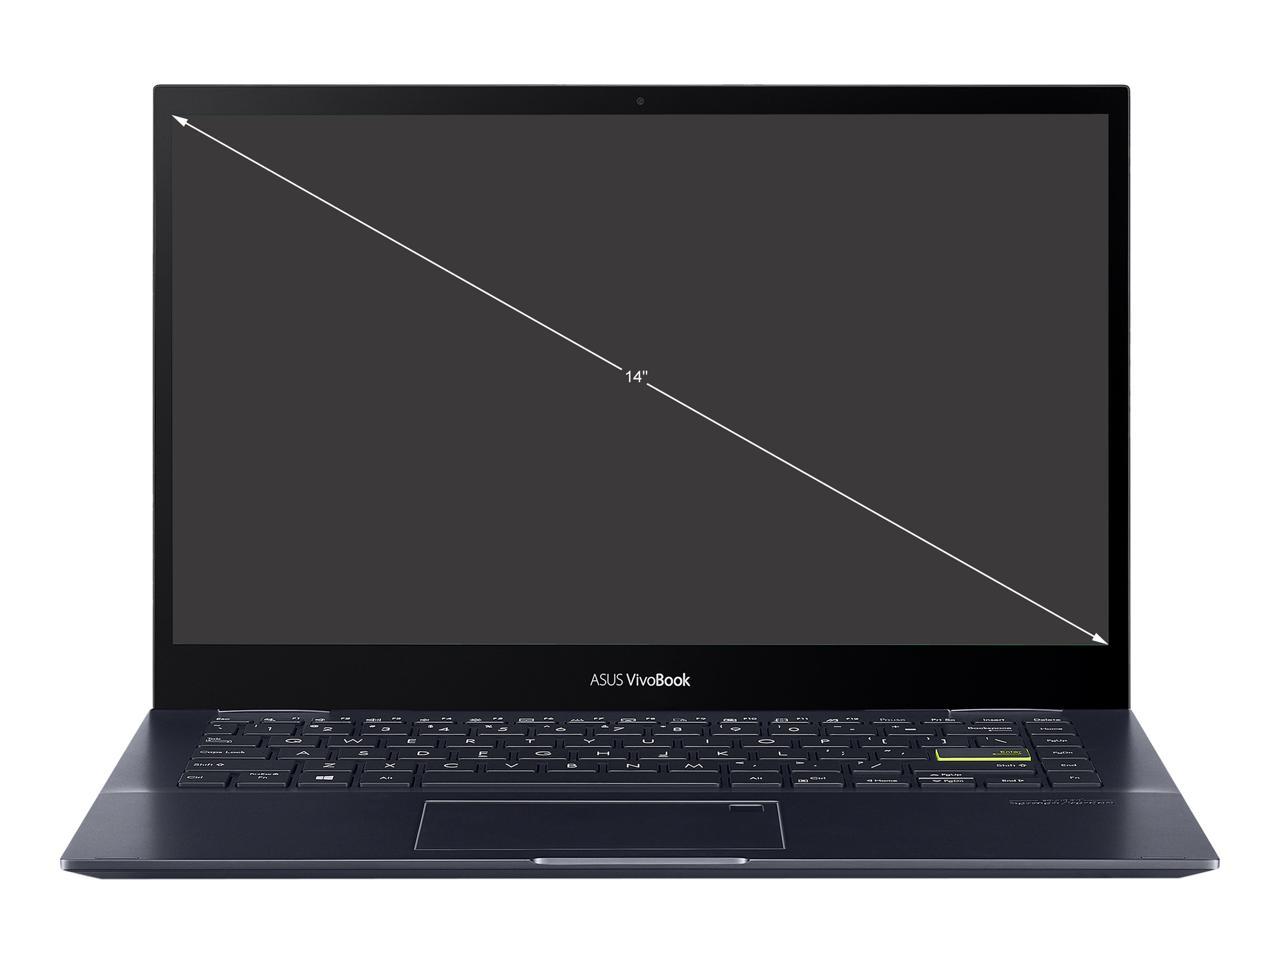 ASUS VivoBook Flip 14 TM420UA-DS71T 2-in-1 Laptop AMD Ryzen 7 5700U 1.